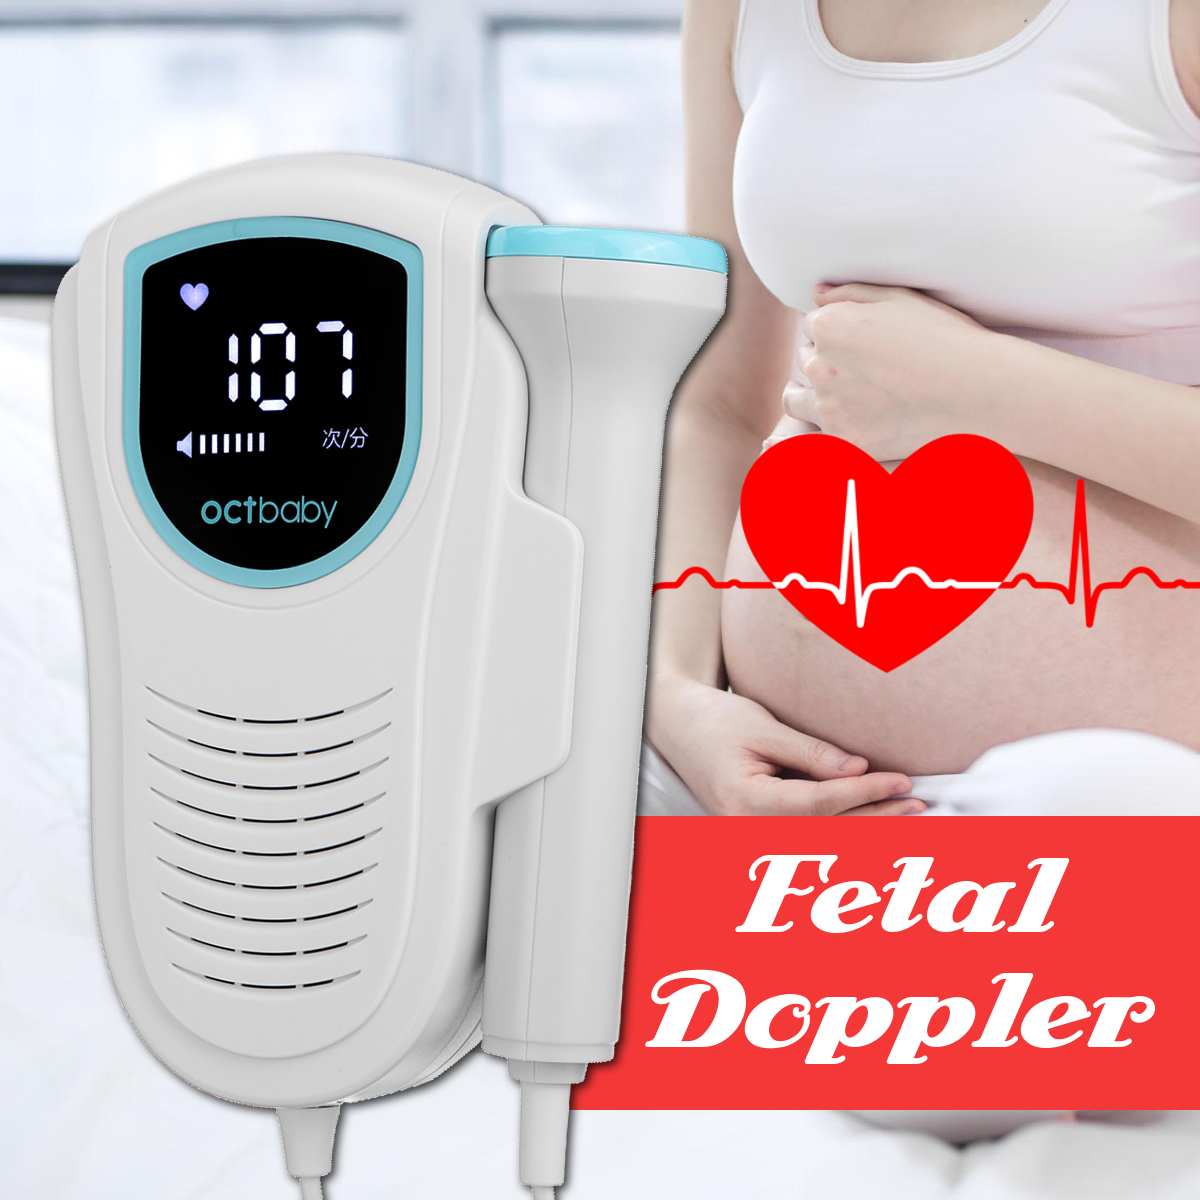 Foetale Doppler Ultrasound Baby Hartslag Detector Home Zwangere Doppler Baby Hartslagmeter Pocket Doppler Monitor 3.0M